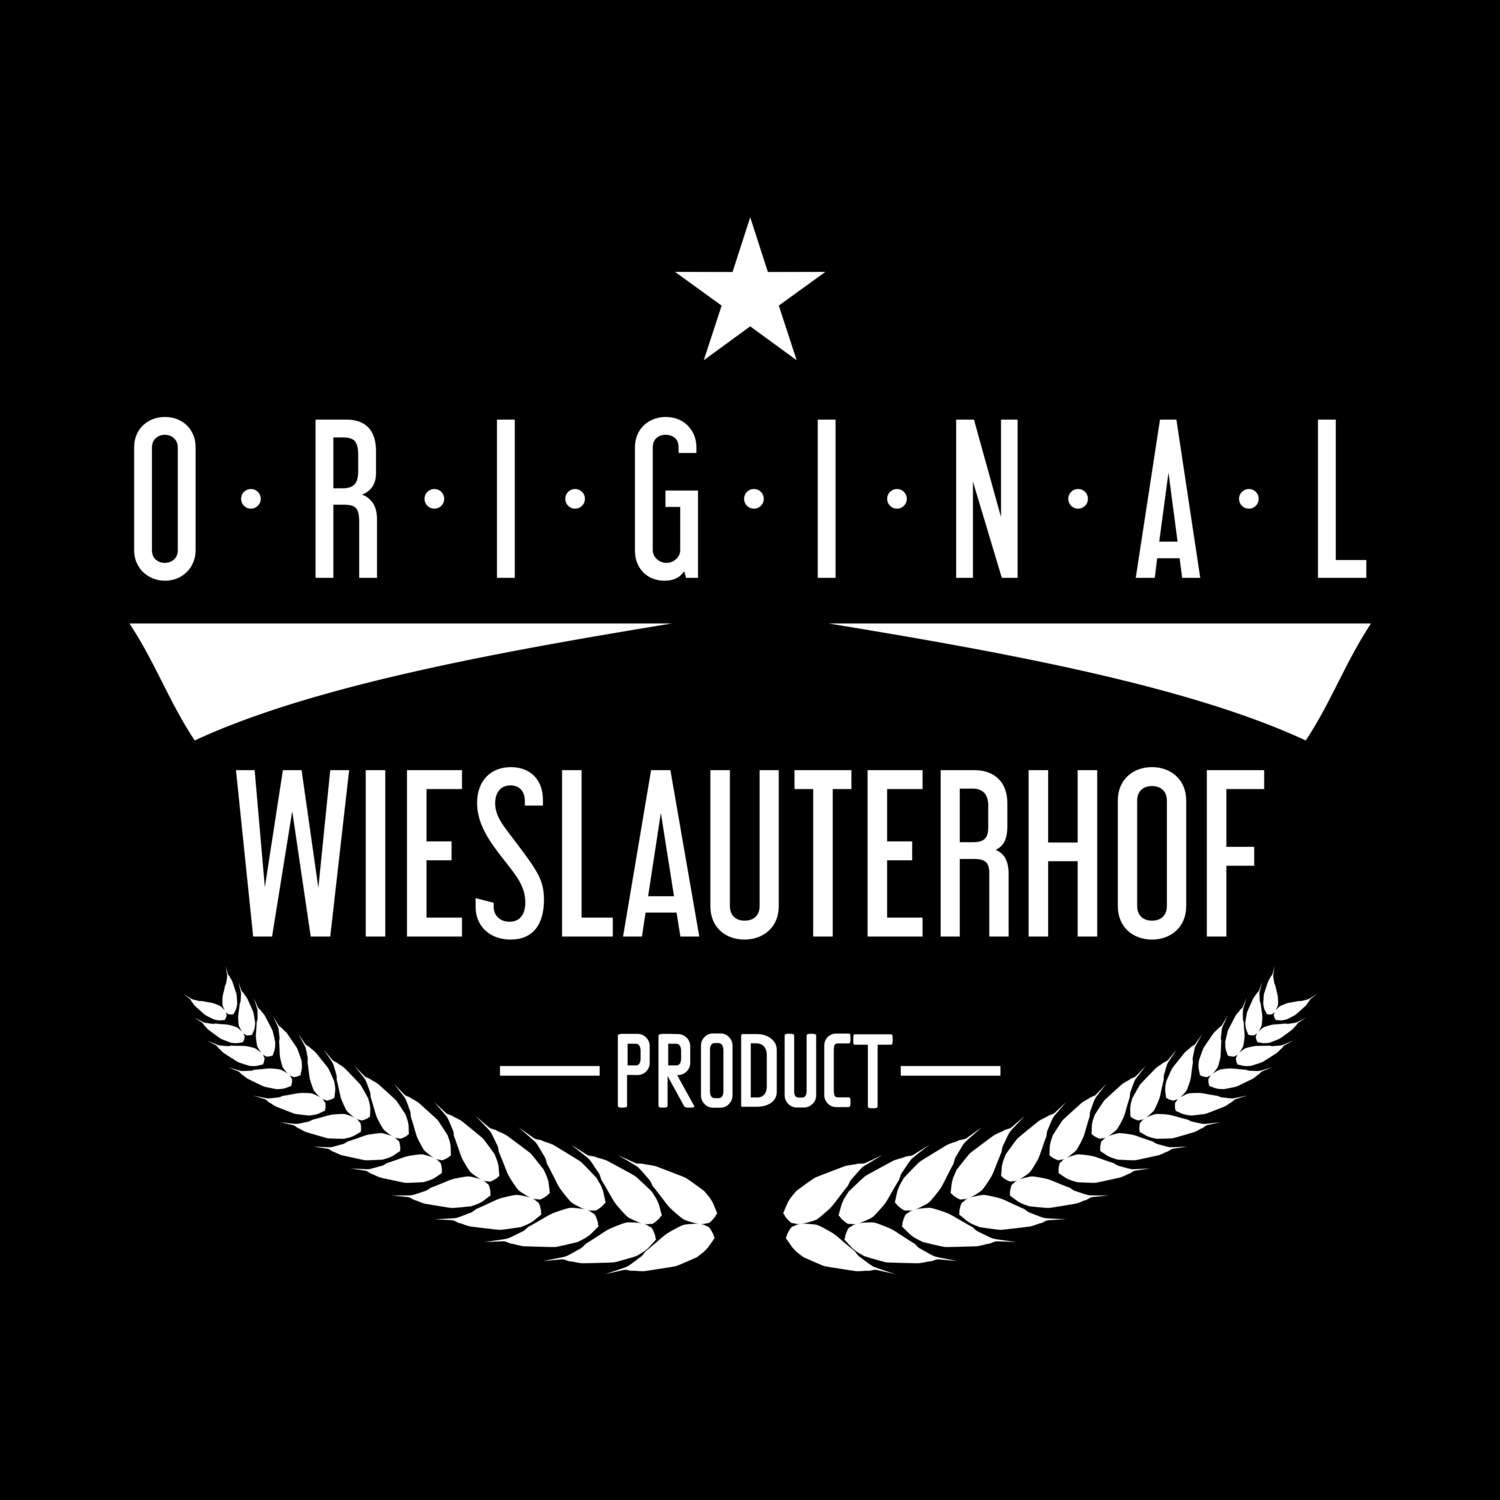 Wieslauterhof T-Shirt »Original Product«